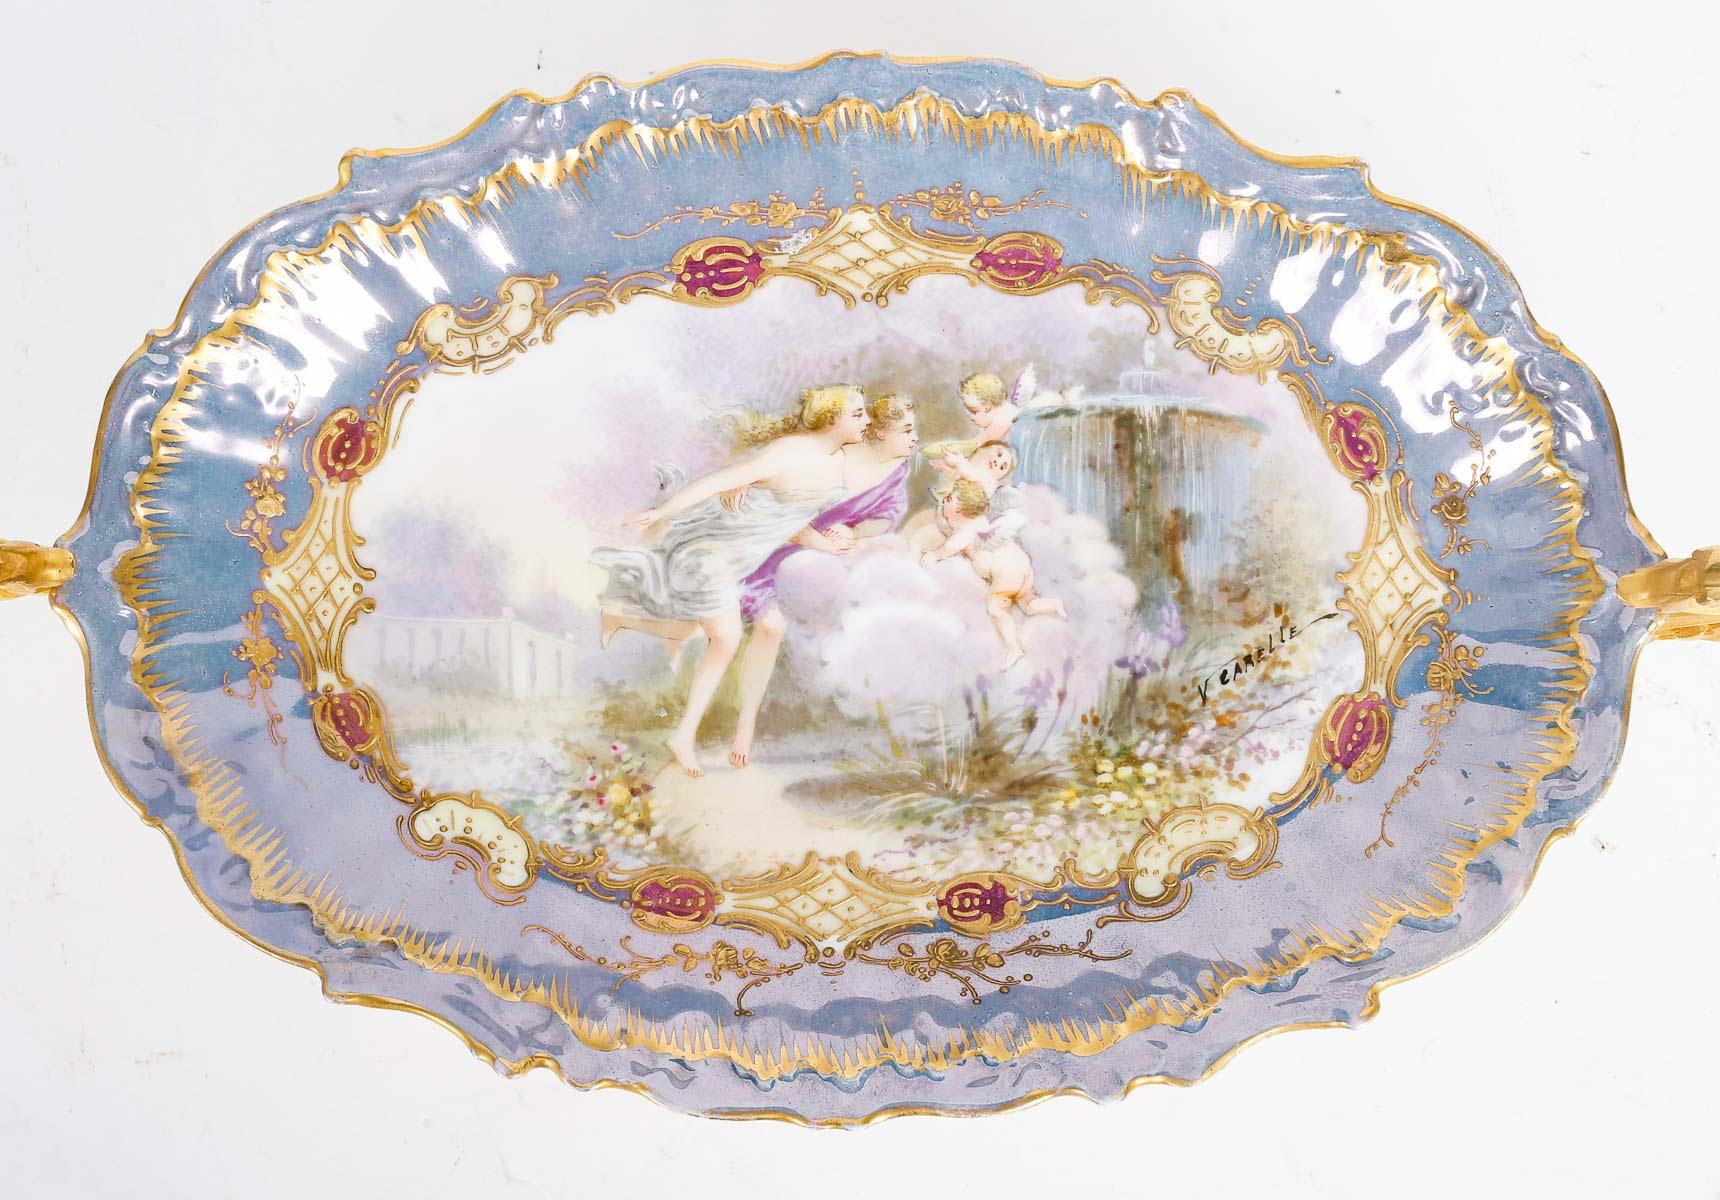 Coupe en porcelaine de Sèvres du XIXe siècle, d'époque Napoléon III.

Coupe en porcelaine de Sèvres, monture en bronze doré, XIXe siècle, période Napoléon III.
h : 11cm, l : 38cm, p : 18cm